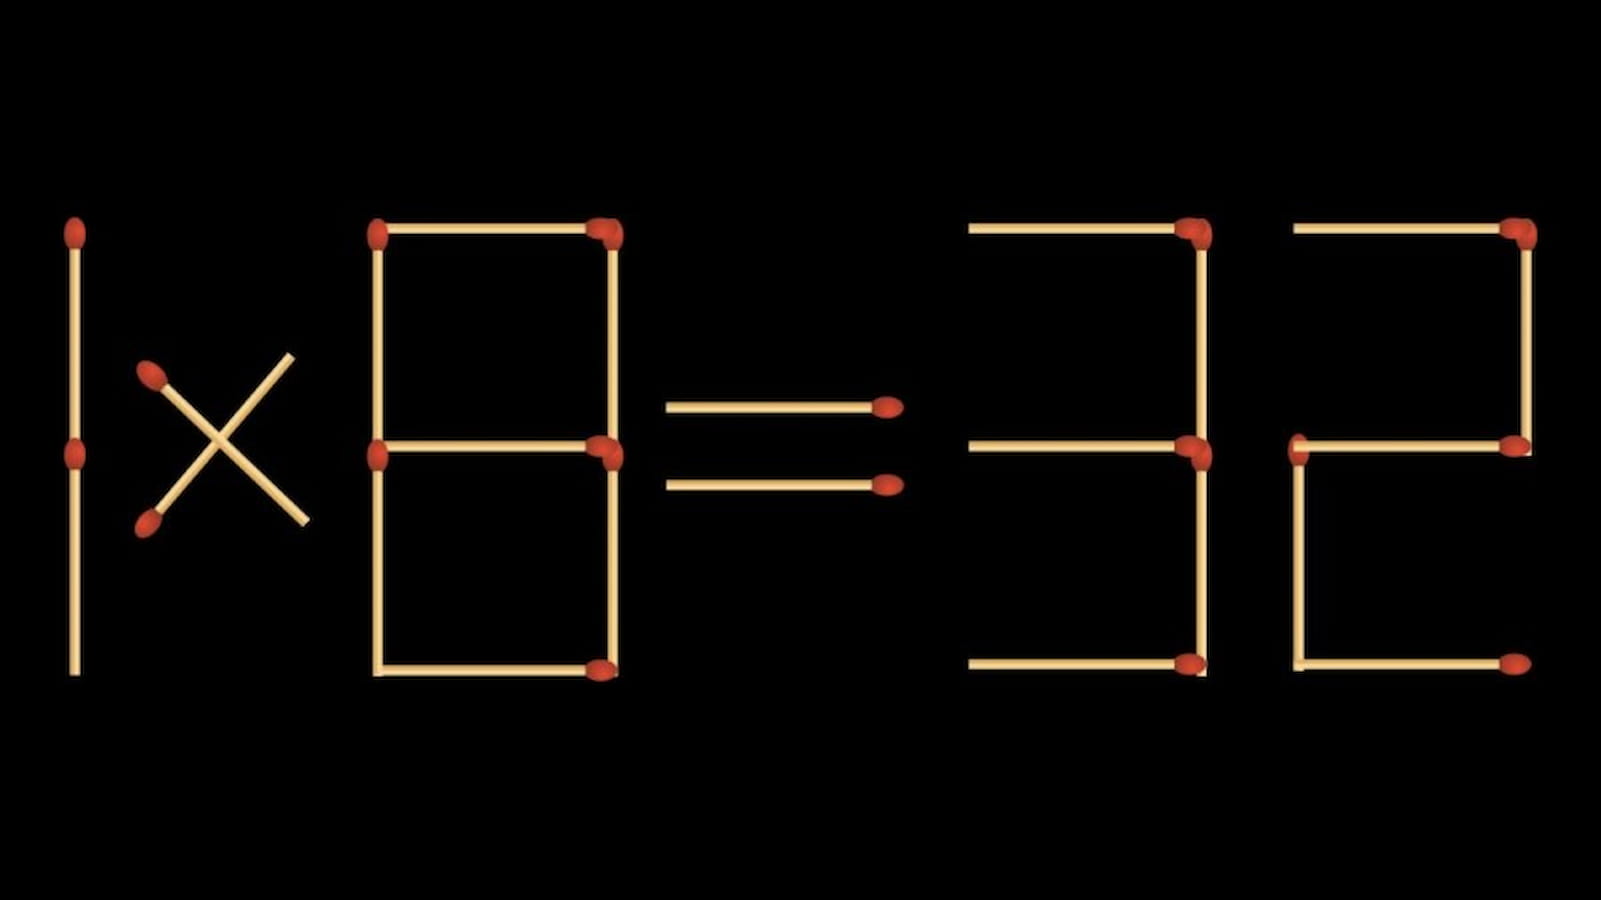 اختبار الذكاء العقلي: 1×8 = 32 إصلاح المعادلة عن طريق إضافة 2 عود الثقاب